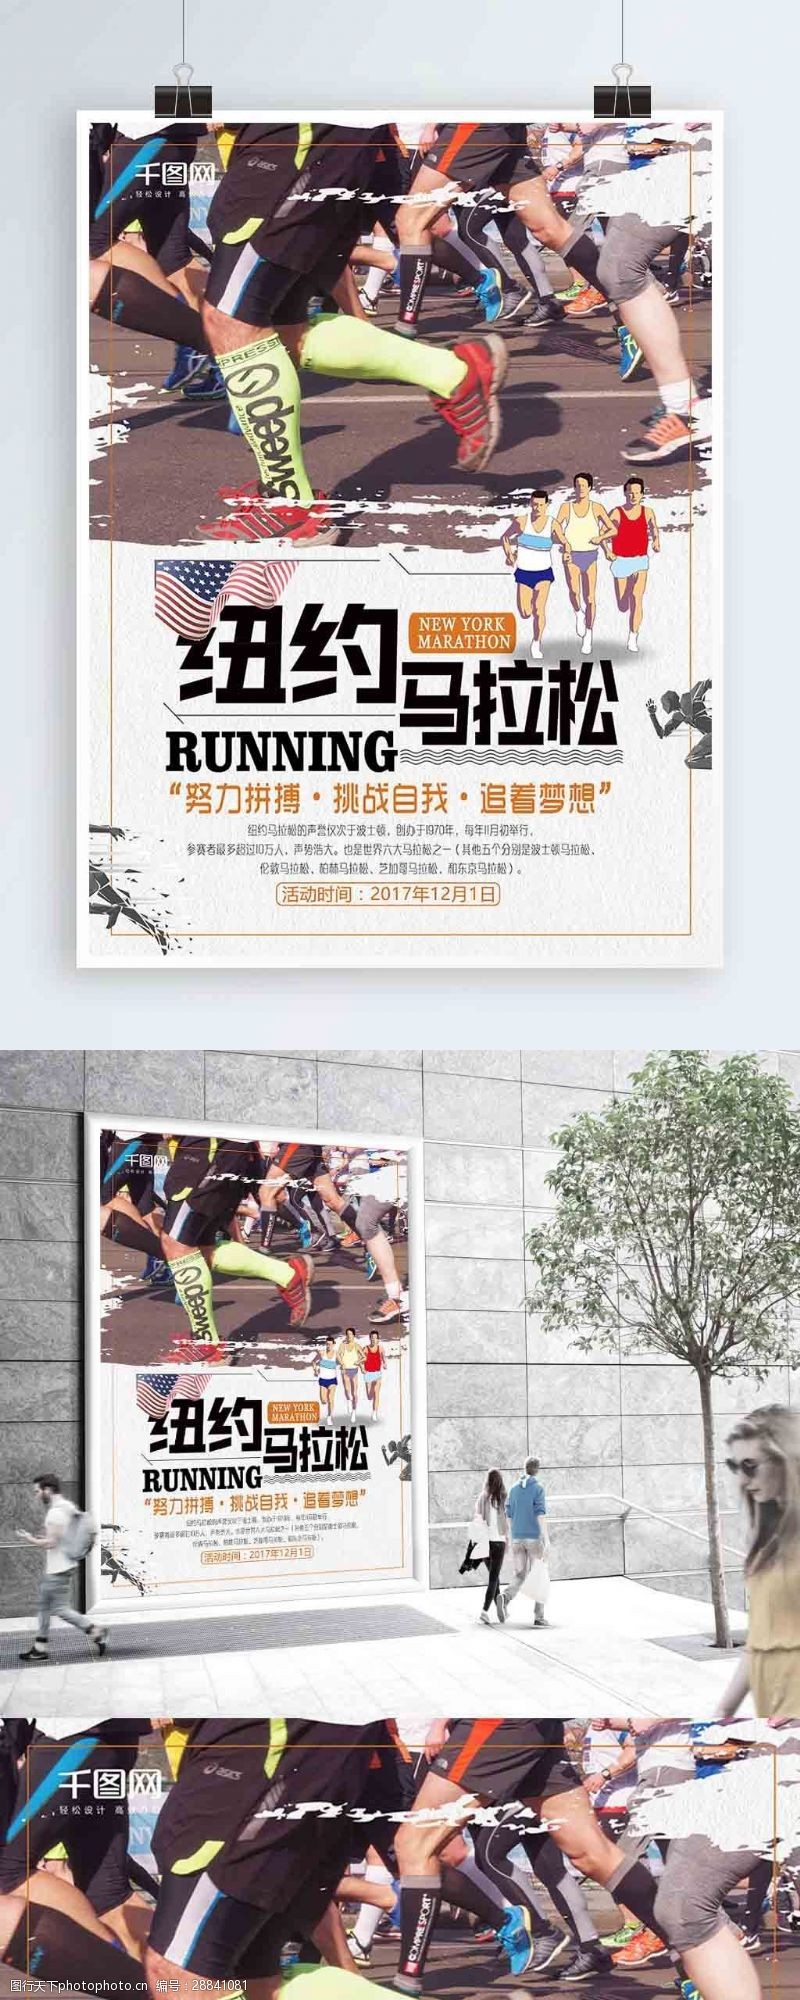 体育竞技创意纽约马拉松比赛宣传海报设计